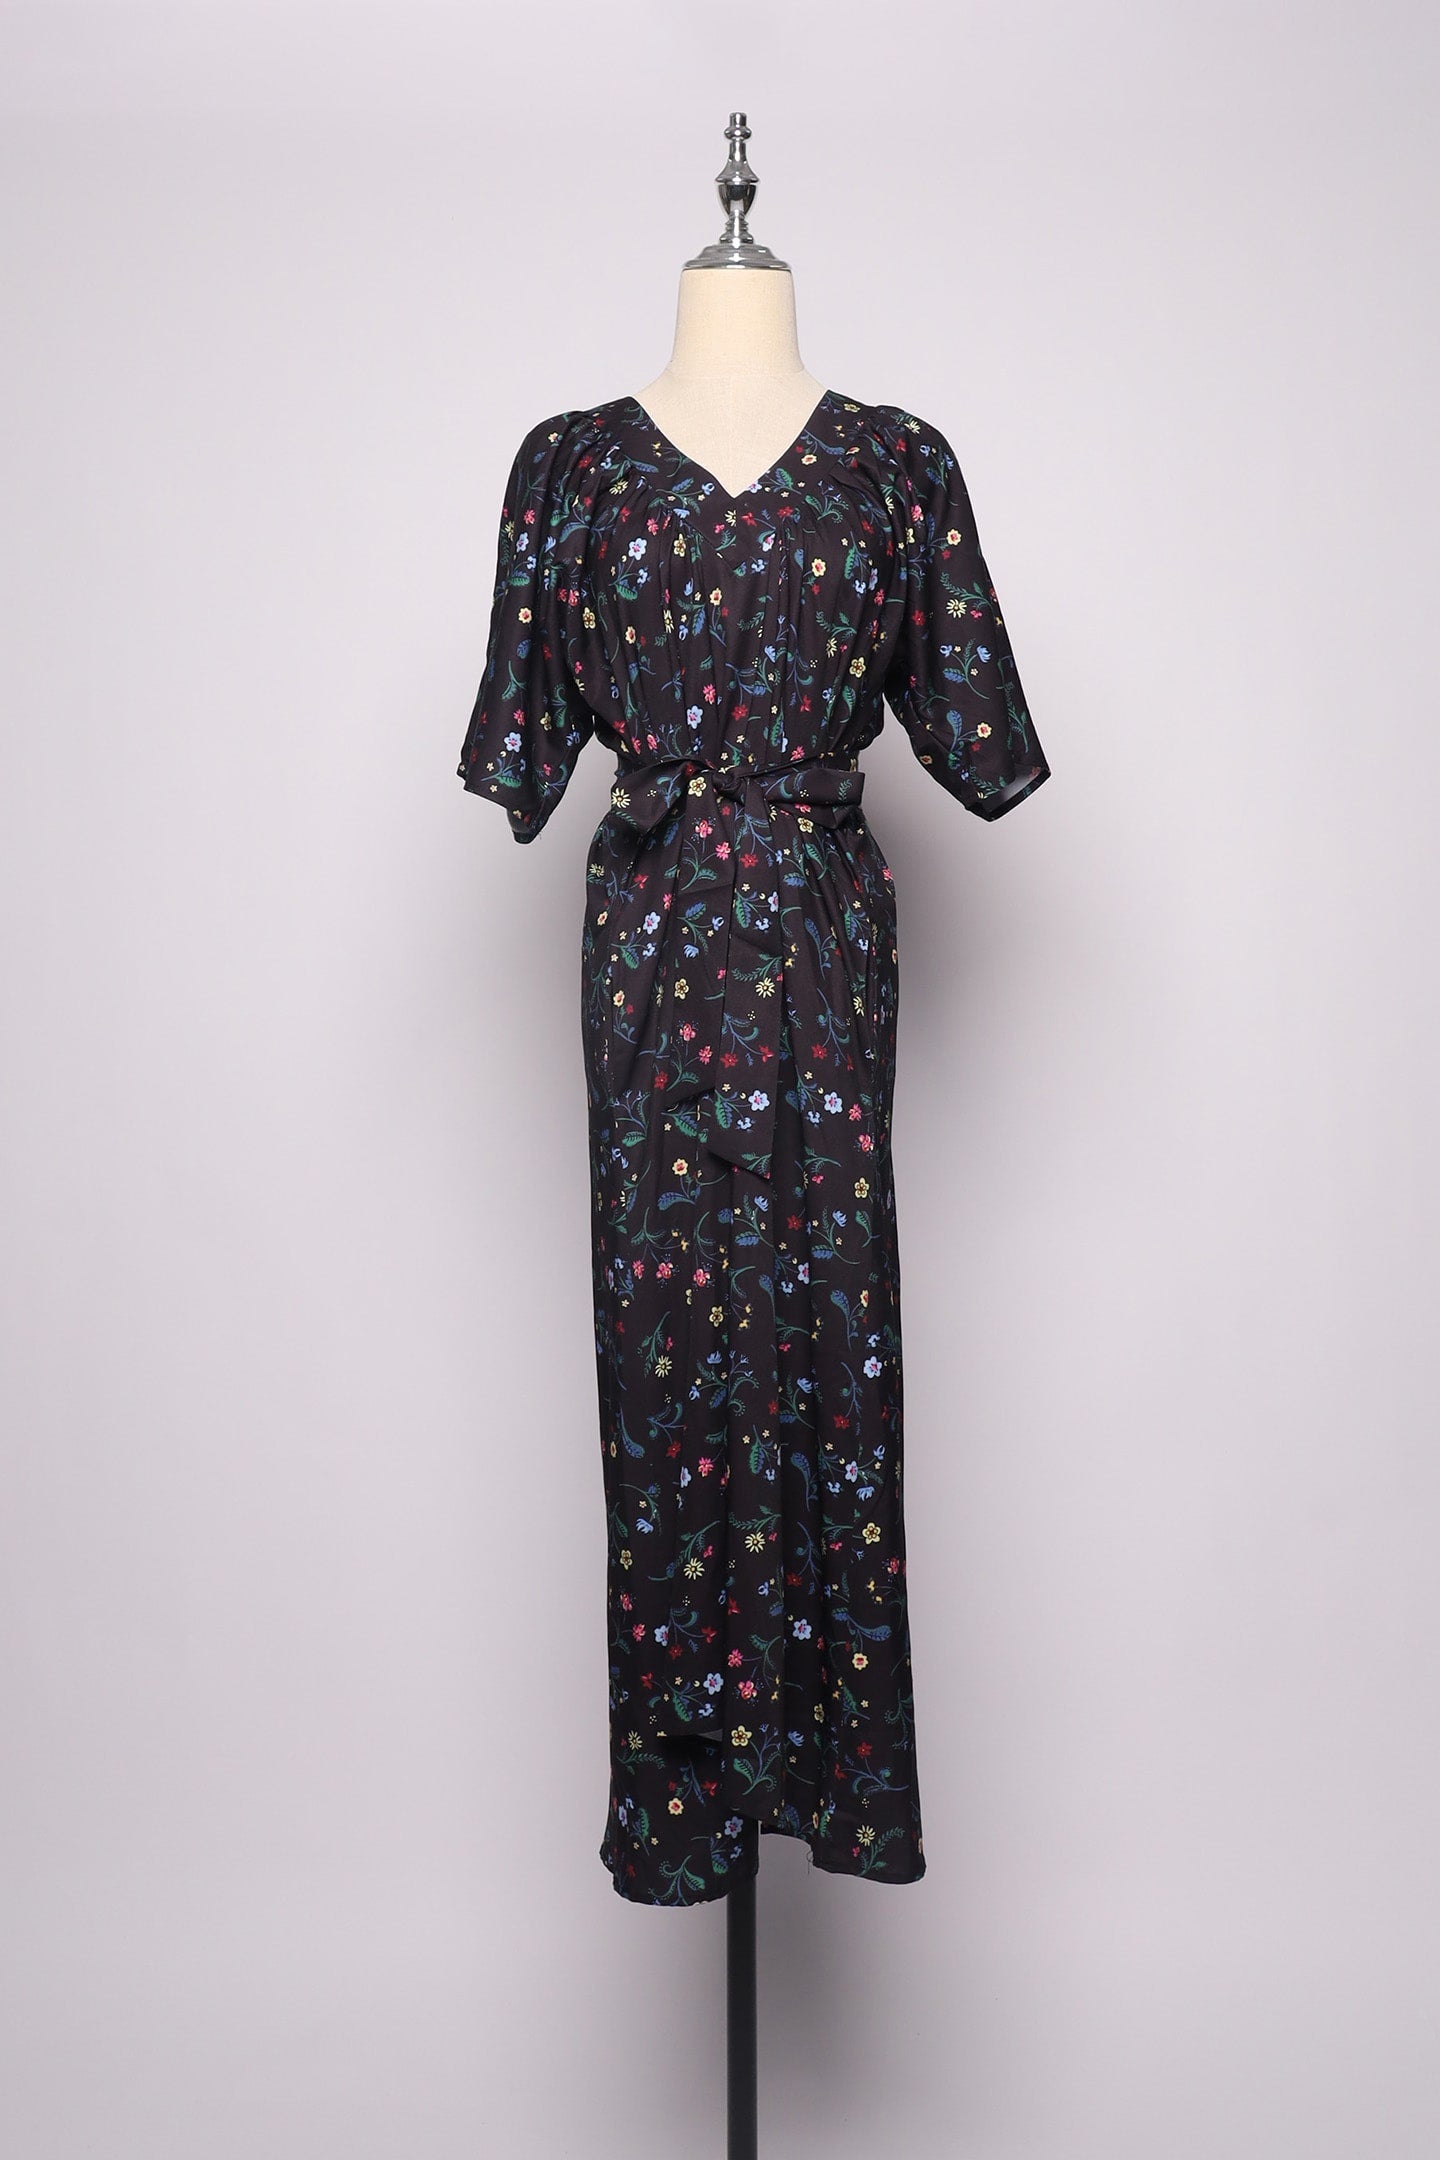 PO - Whitney V Dress in Blossoms